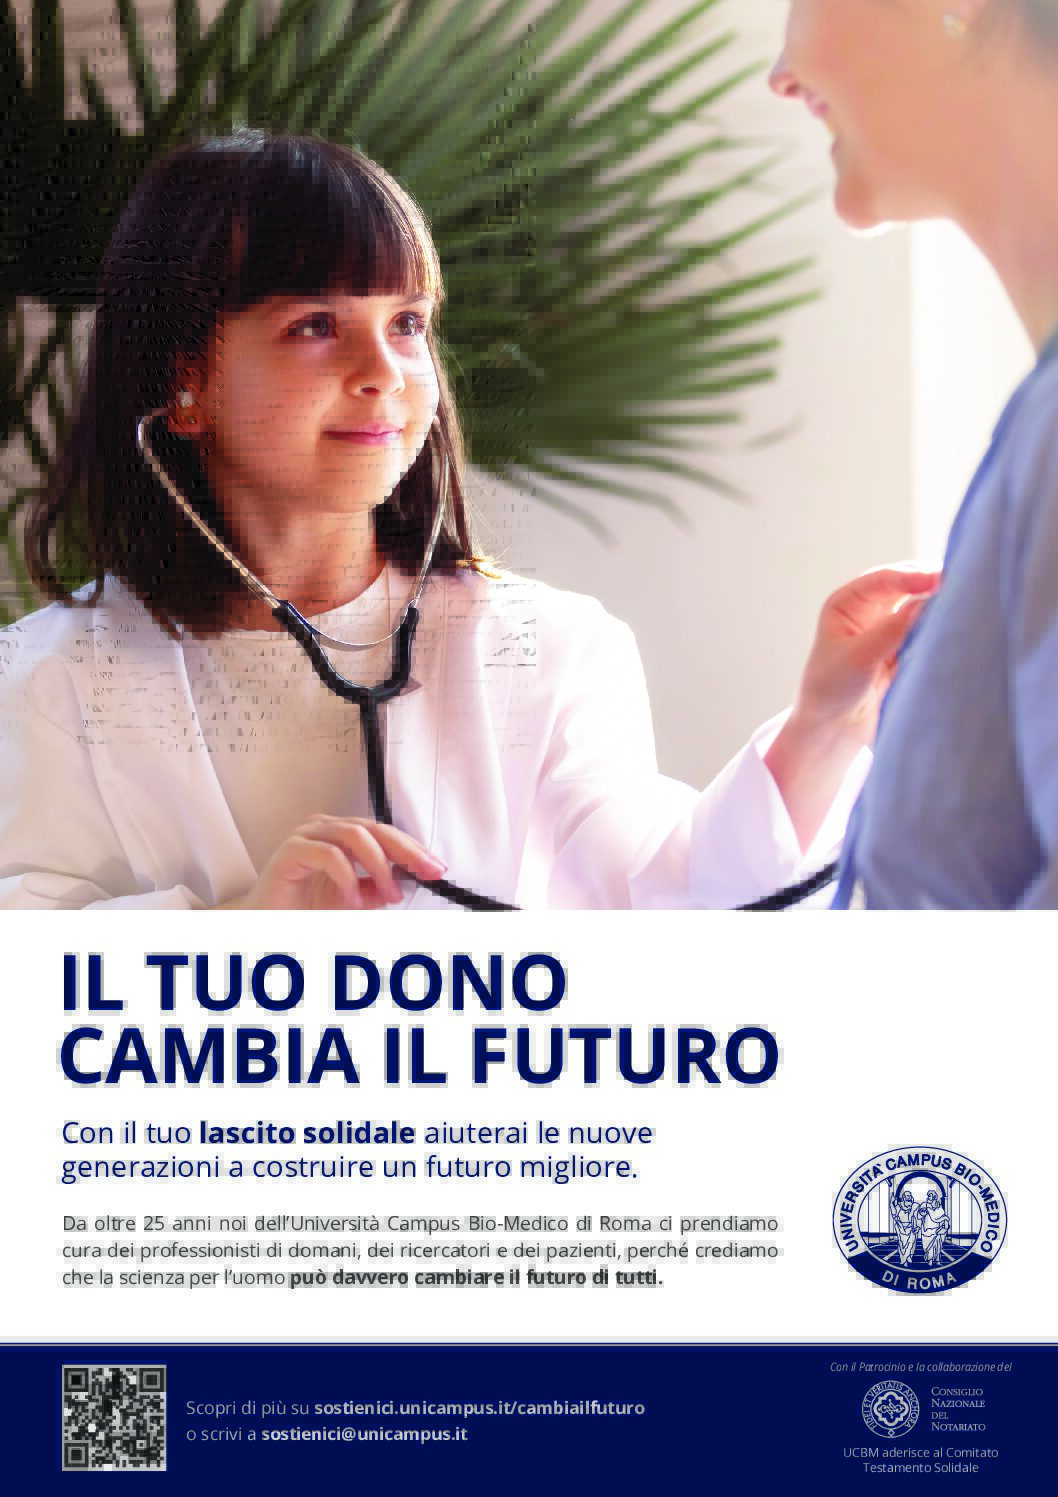  Università Campus Bio-Medico di Roma lancia la nuova Campagna Lasciti  “Il tuo dono cambia il futuro”